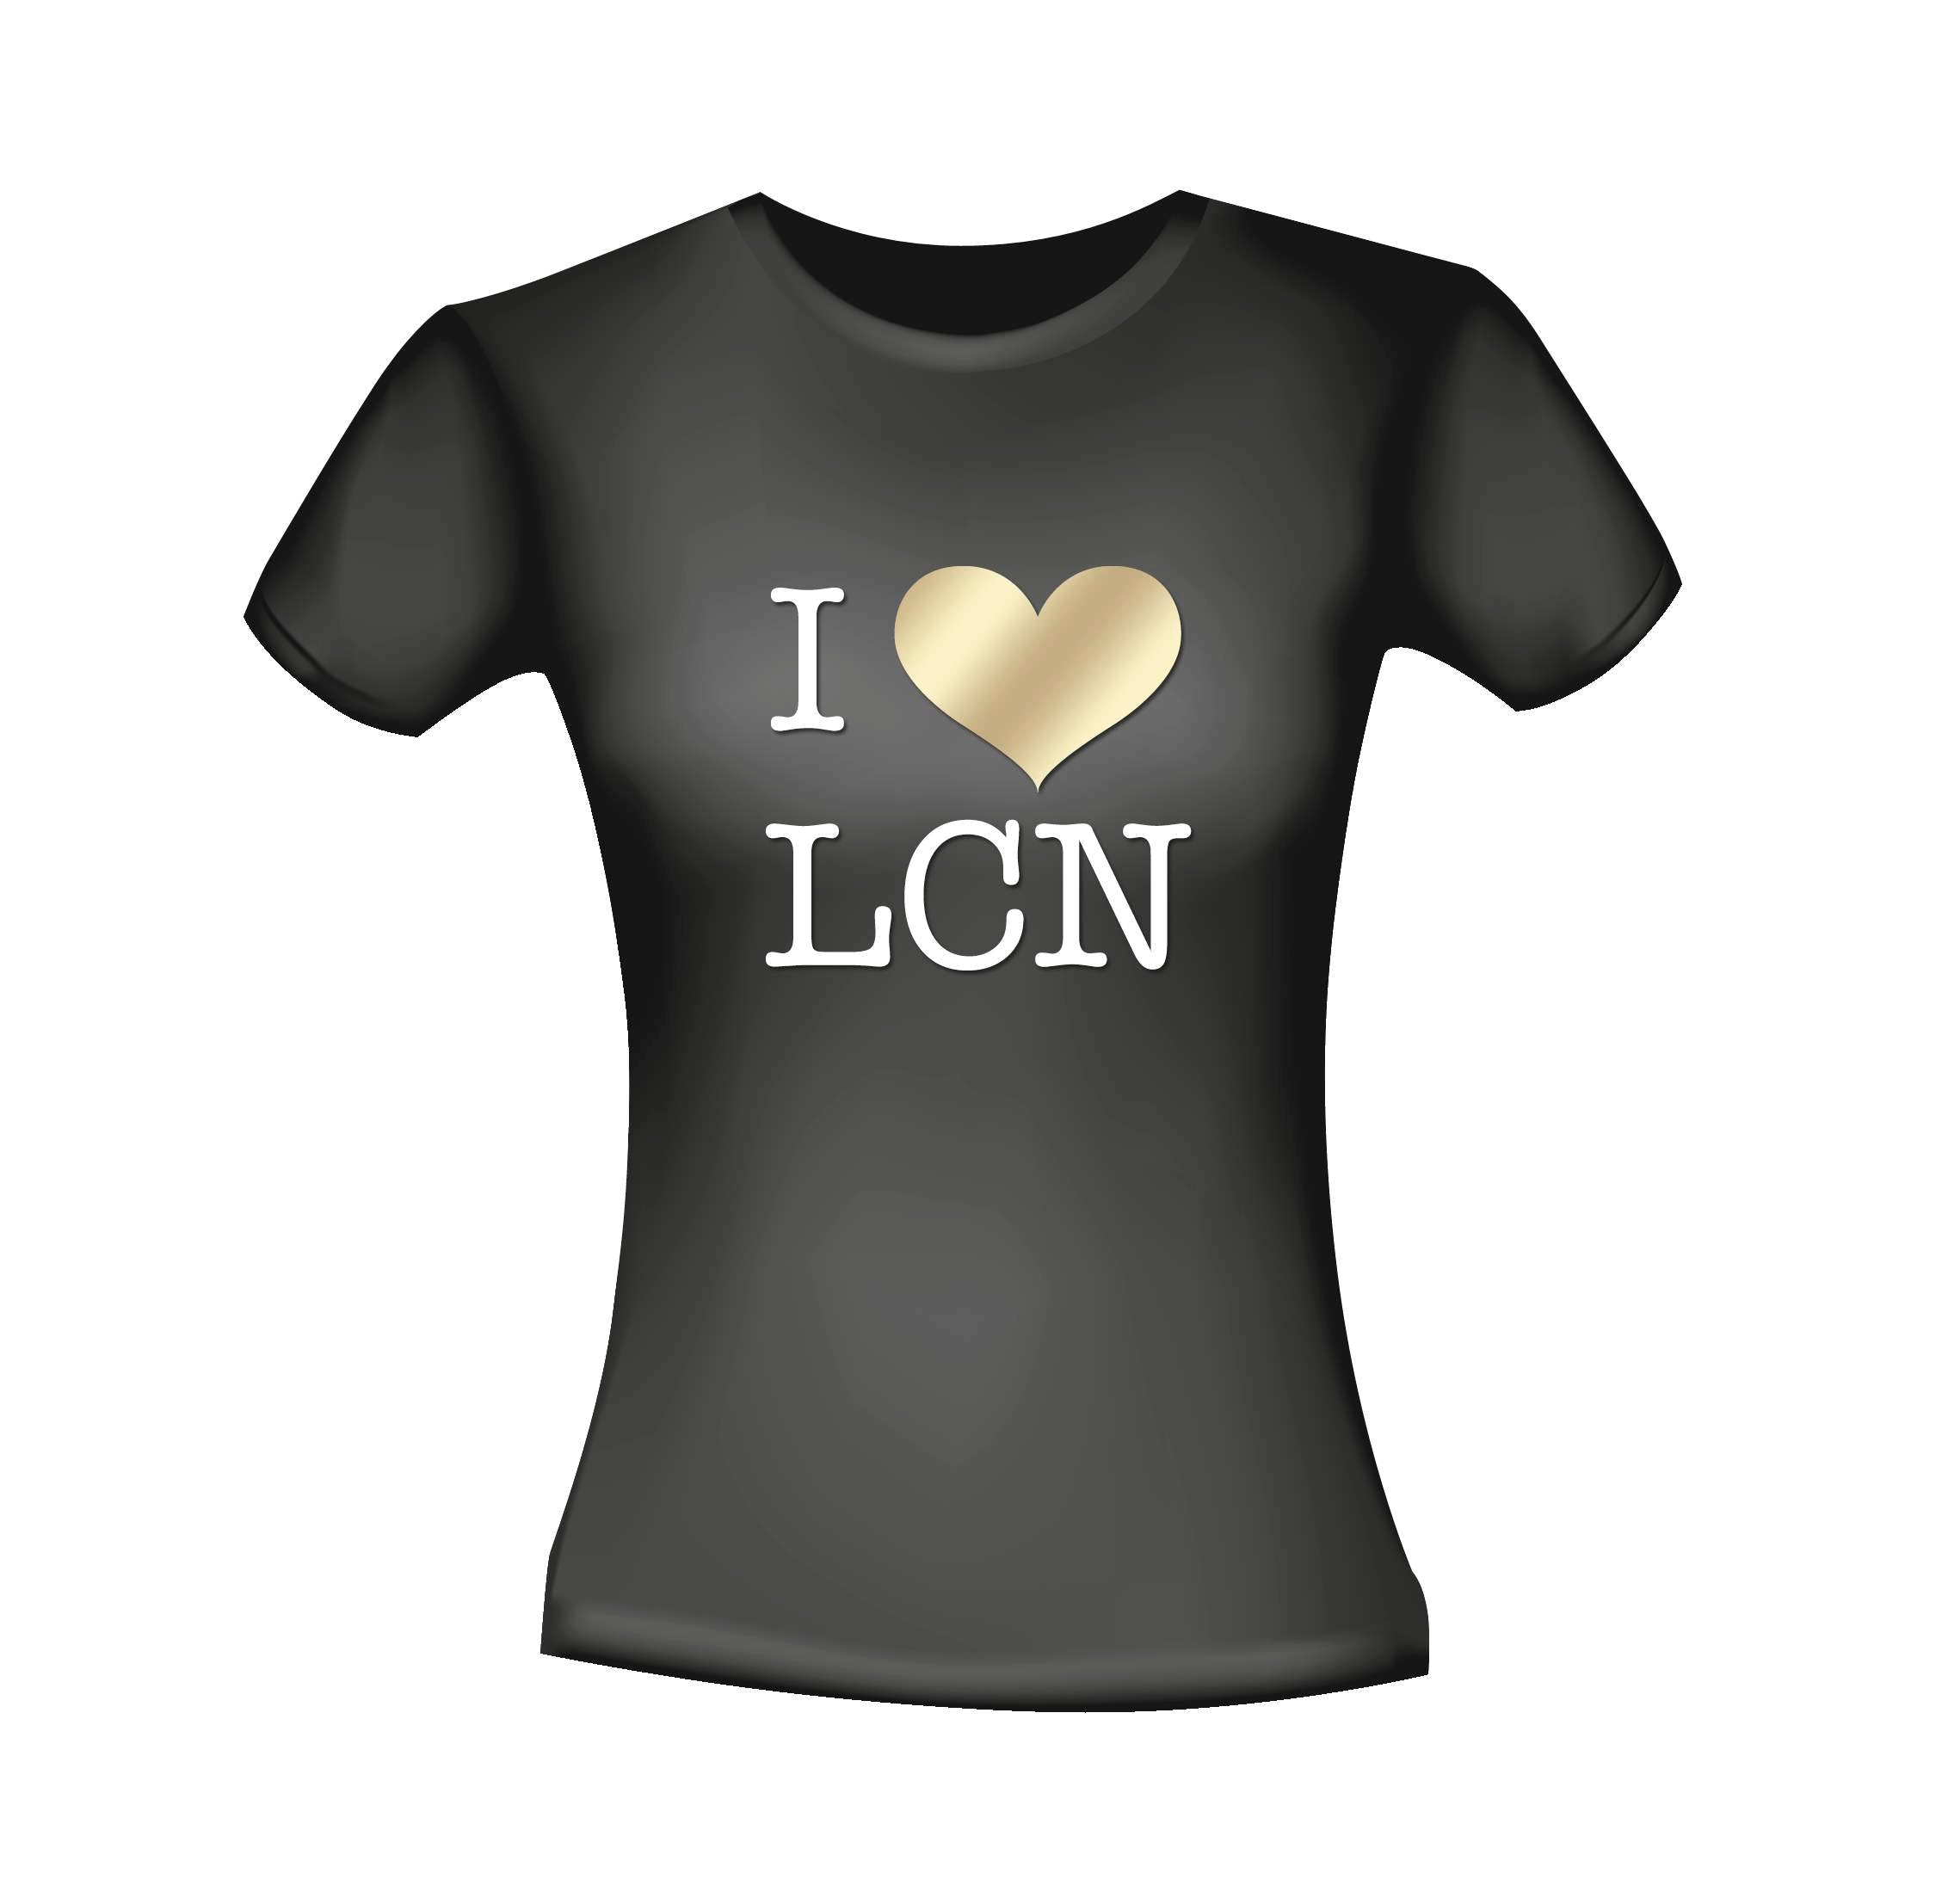 I love LCN black T-Shirt  XL*